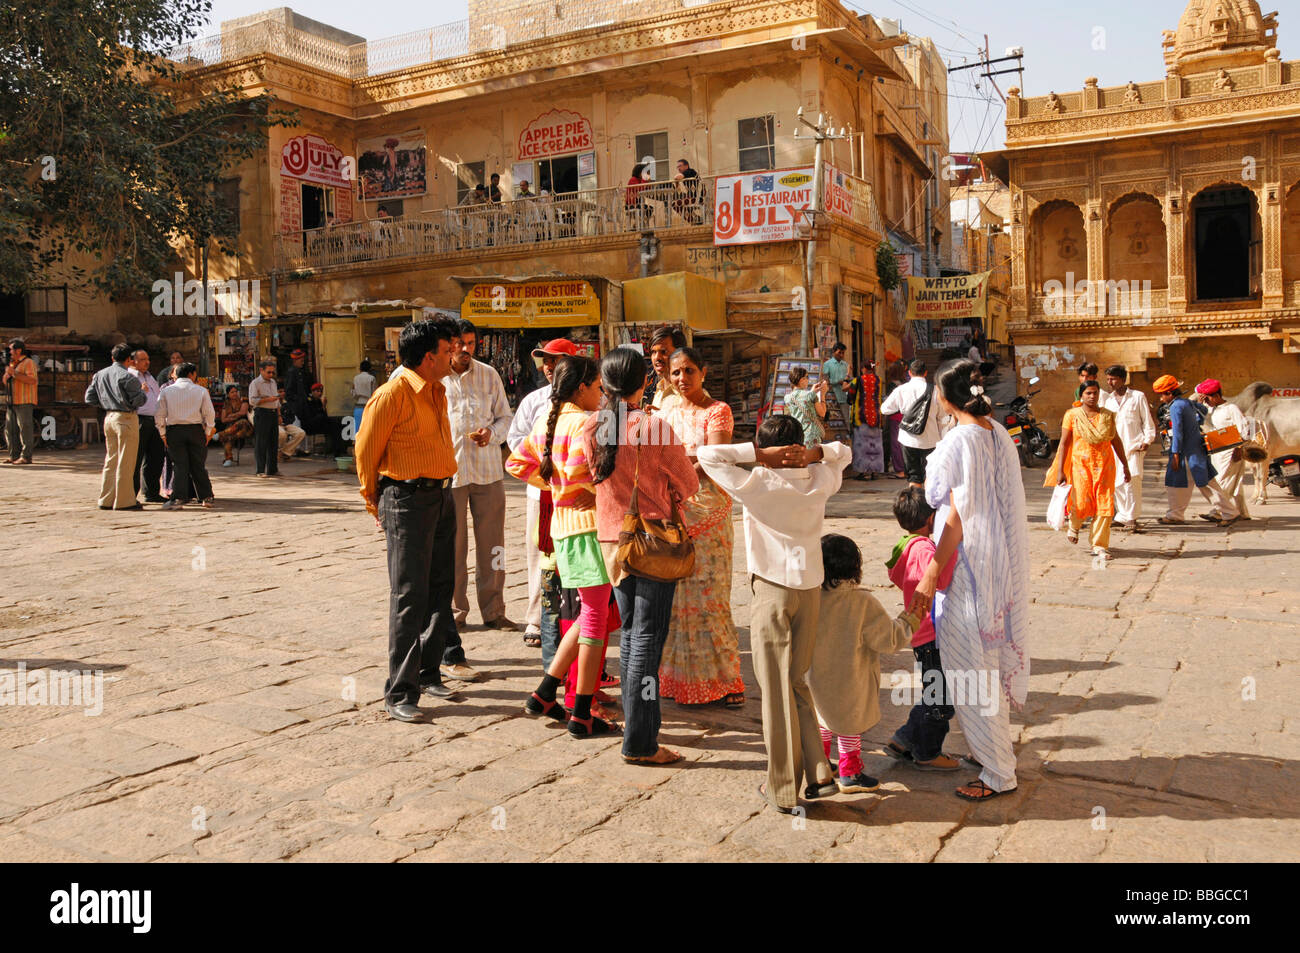 Les visiteurs et les Indiens dans la vieille ville de Jaisalmer, Jaisalmer, Rajasthan, Inde du nord, l'Asie Banque D'Images